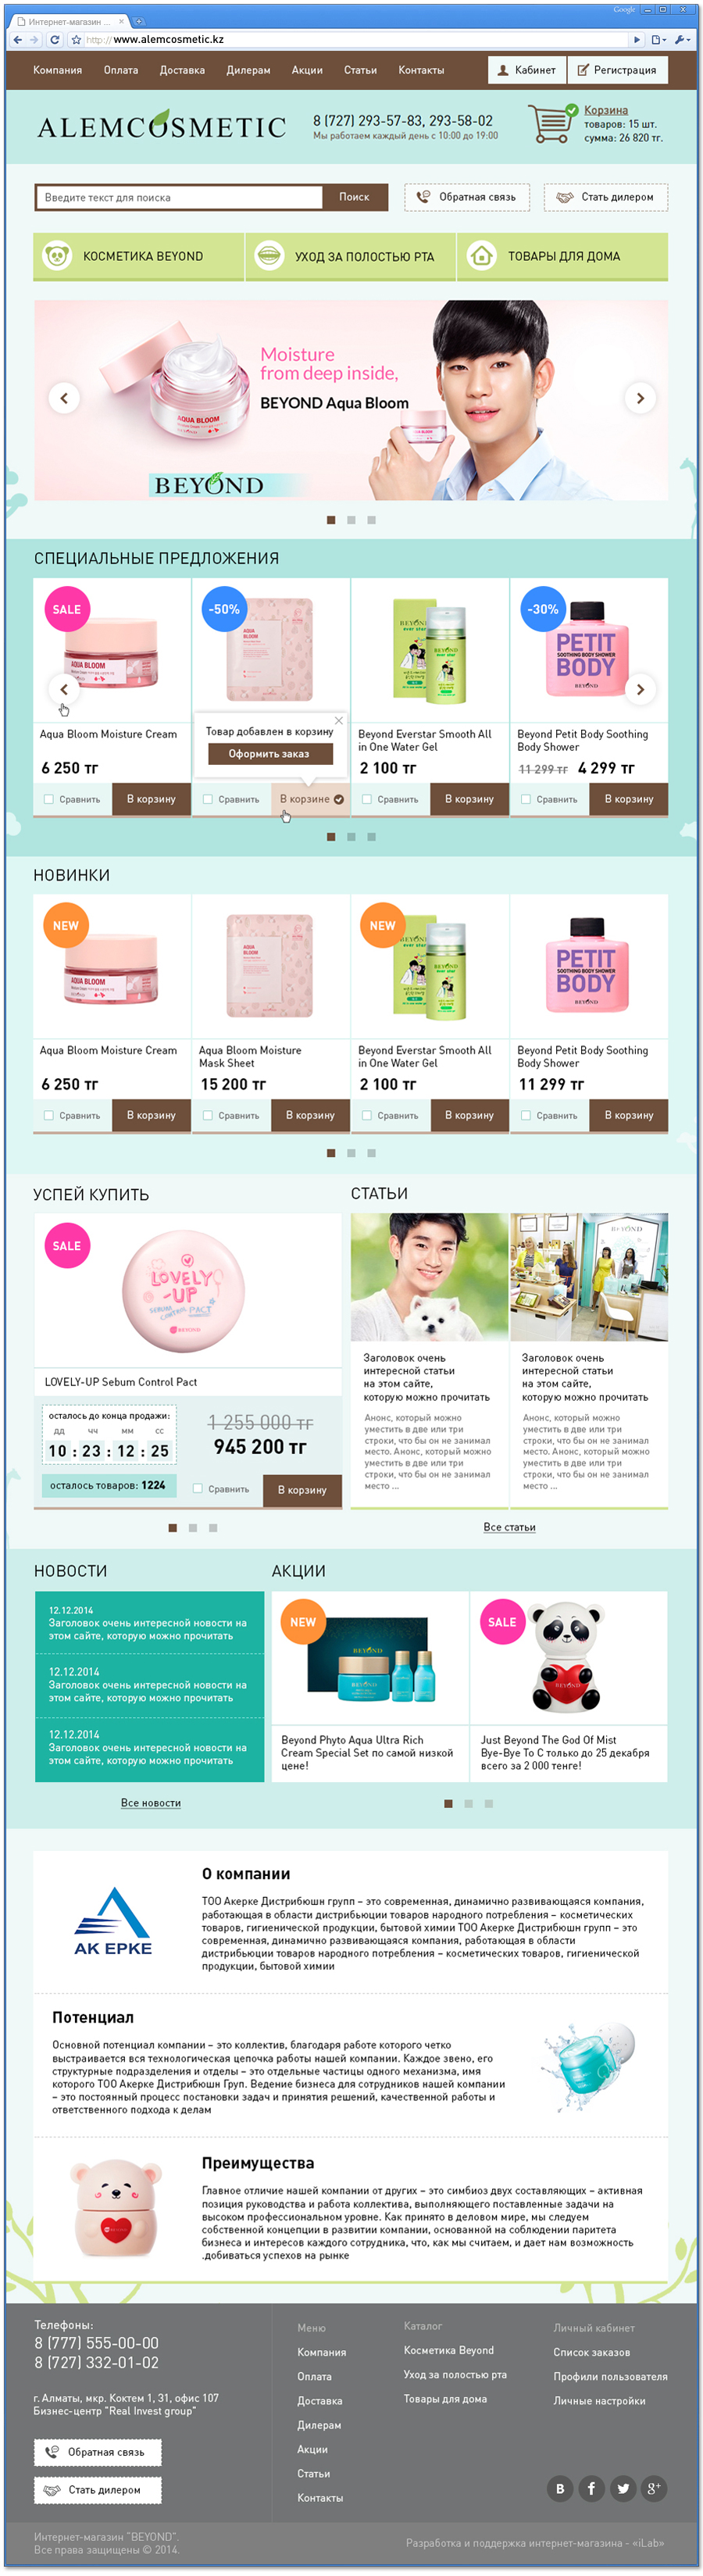 Эскиз главной страницы интернет-магазина Alem Cosmetic